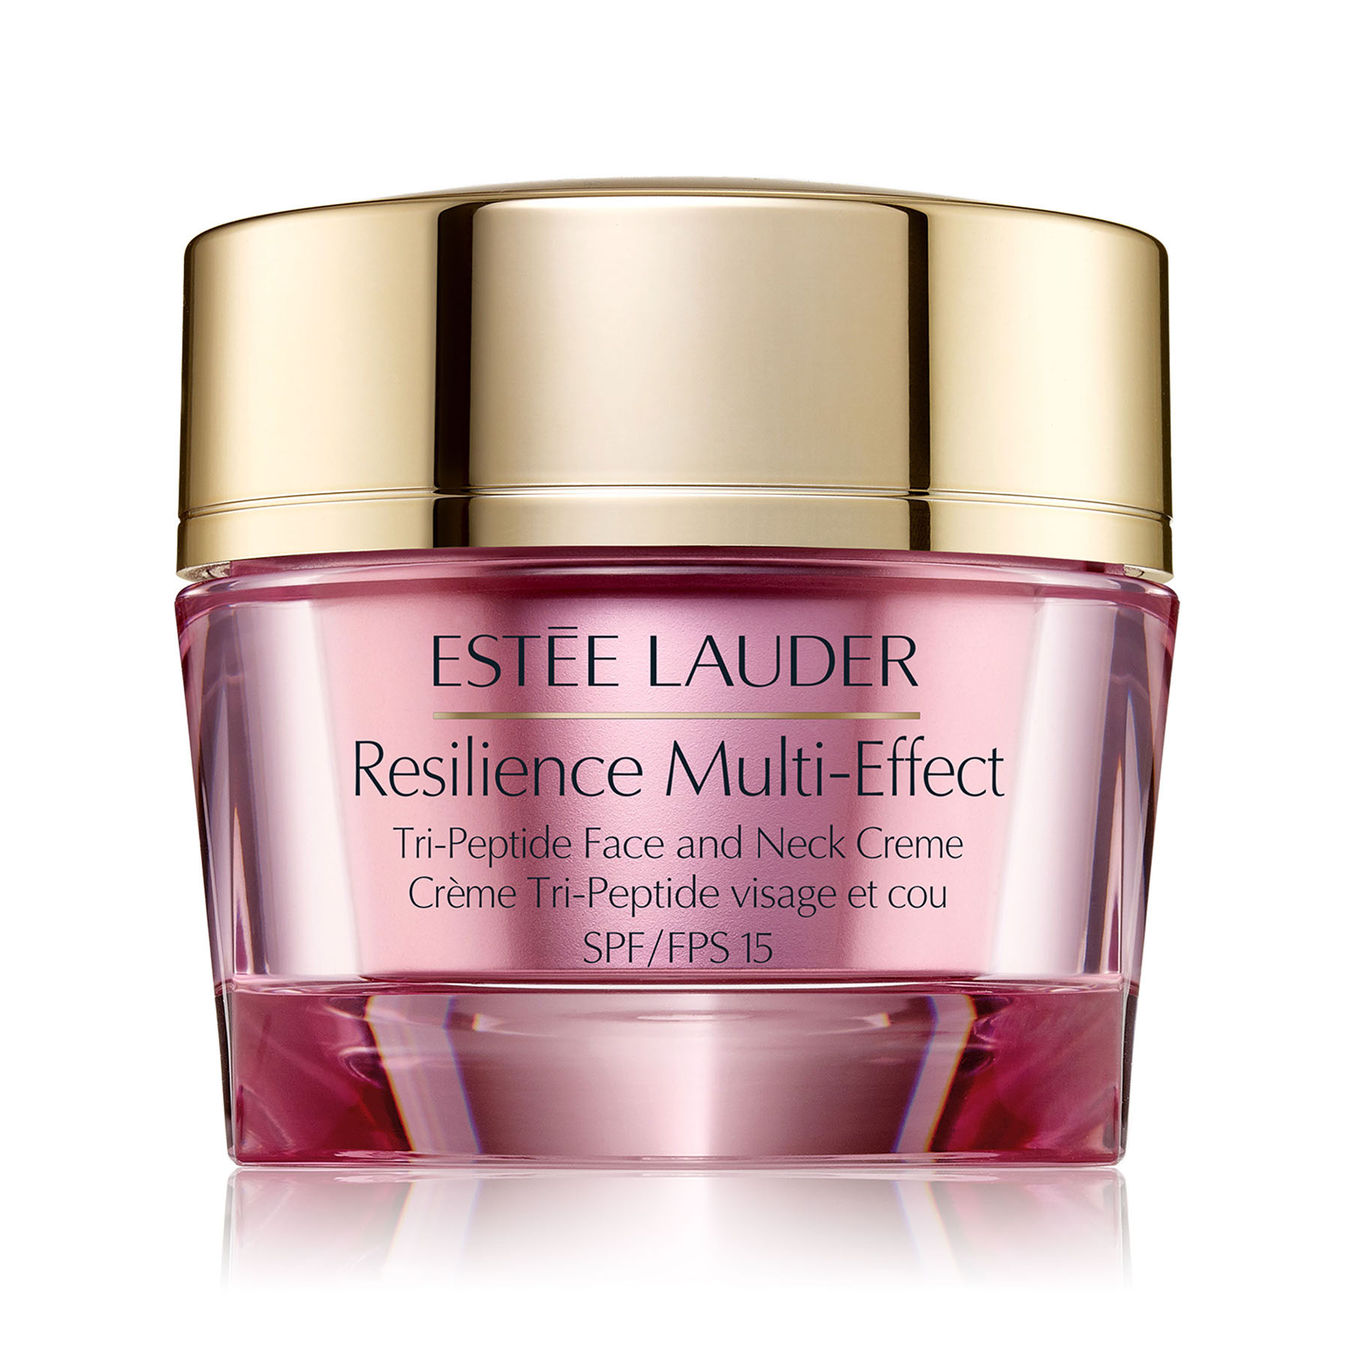 Estée Lauder Resilience Multi-Effect SPF15 Face and Neck Creme normal skin 50ml Damen von Estée Lauder